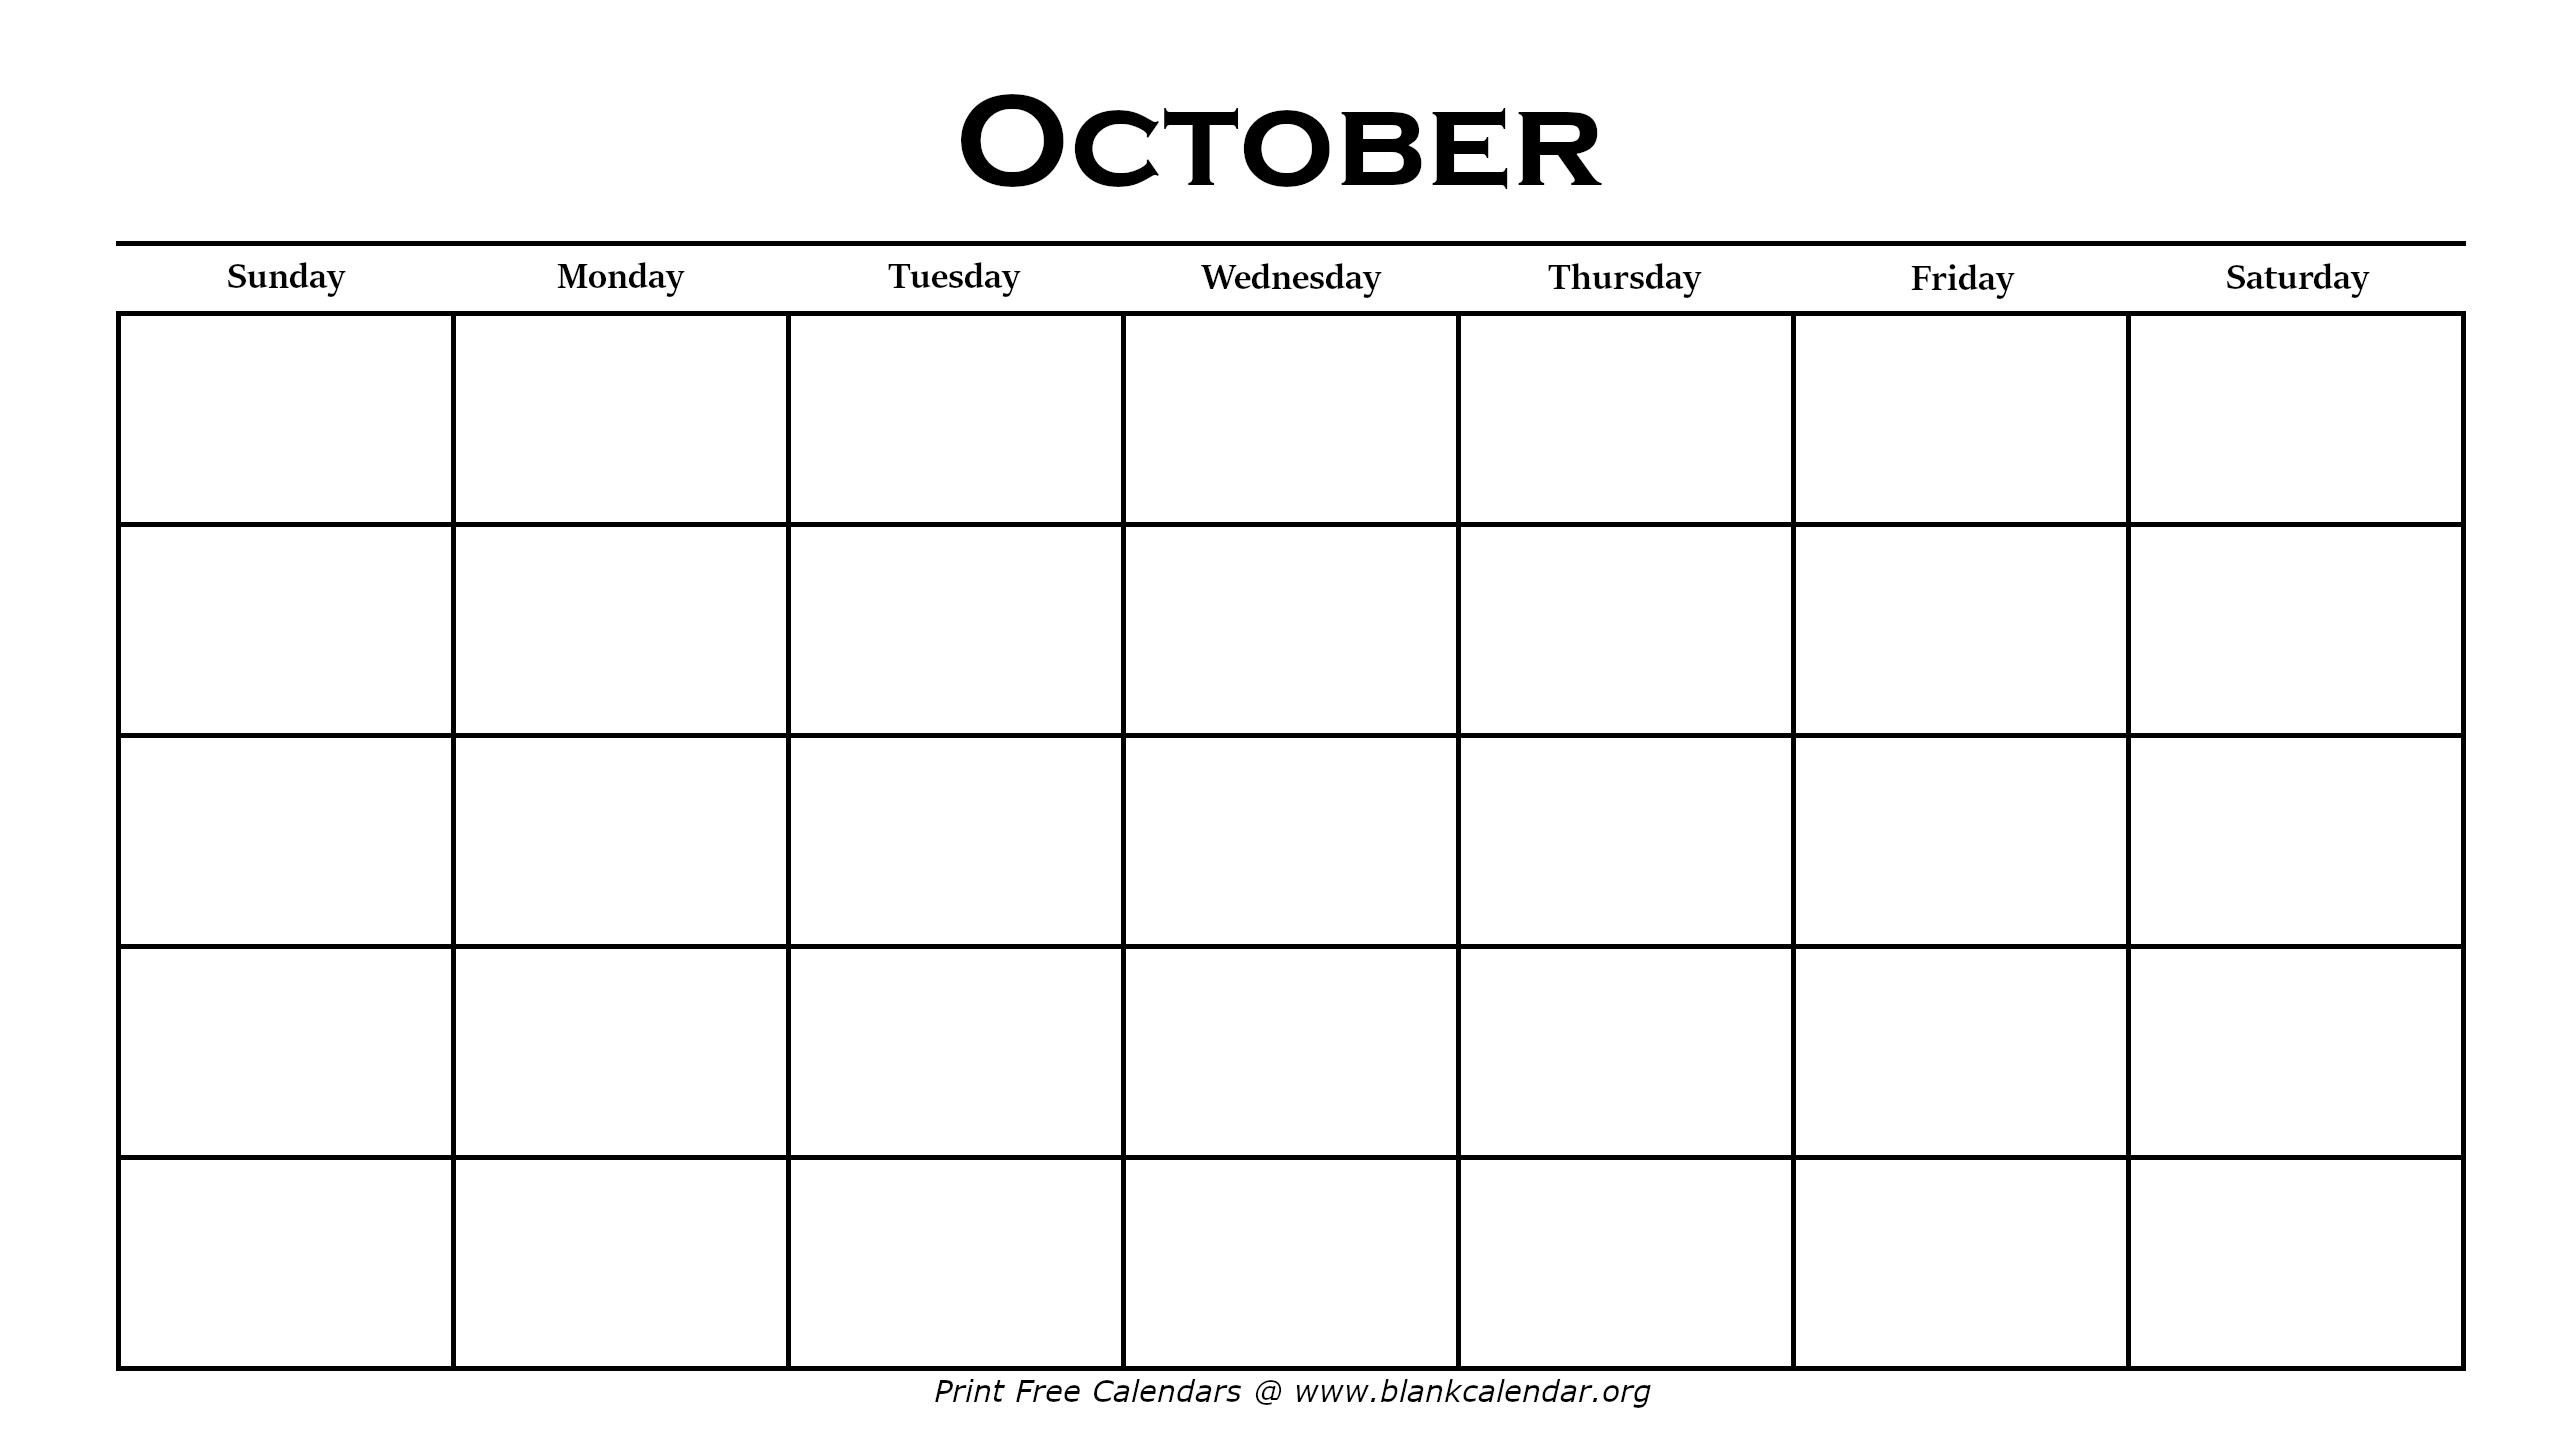 october 2022 calendar printable